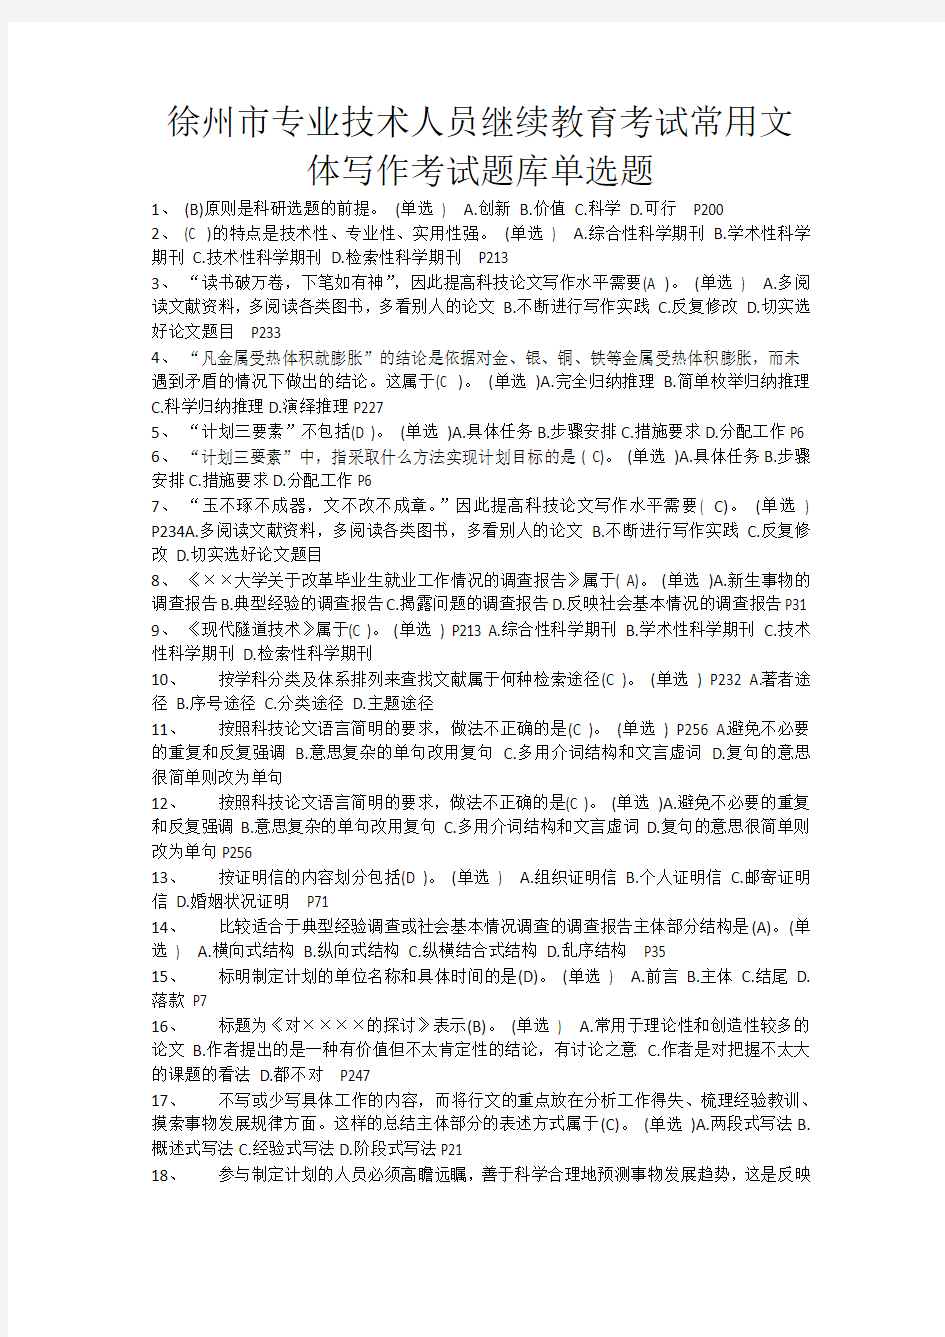 徐州市专业技术人员继续教育考试常用文体写作考试题库单选题知识交流